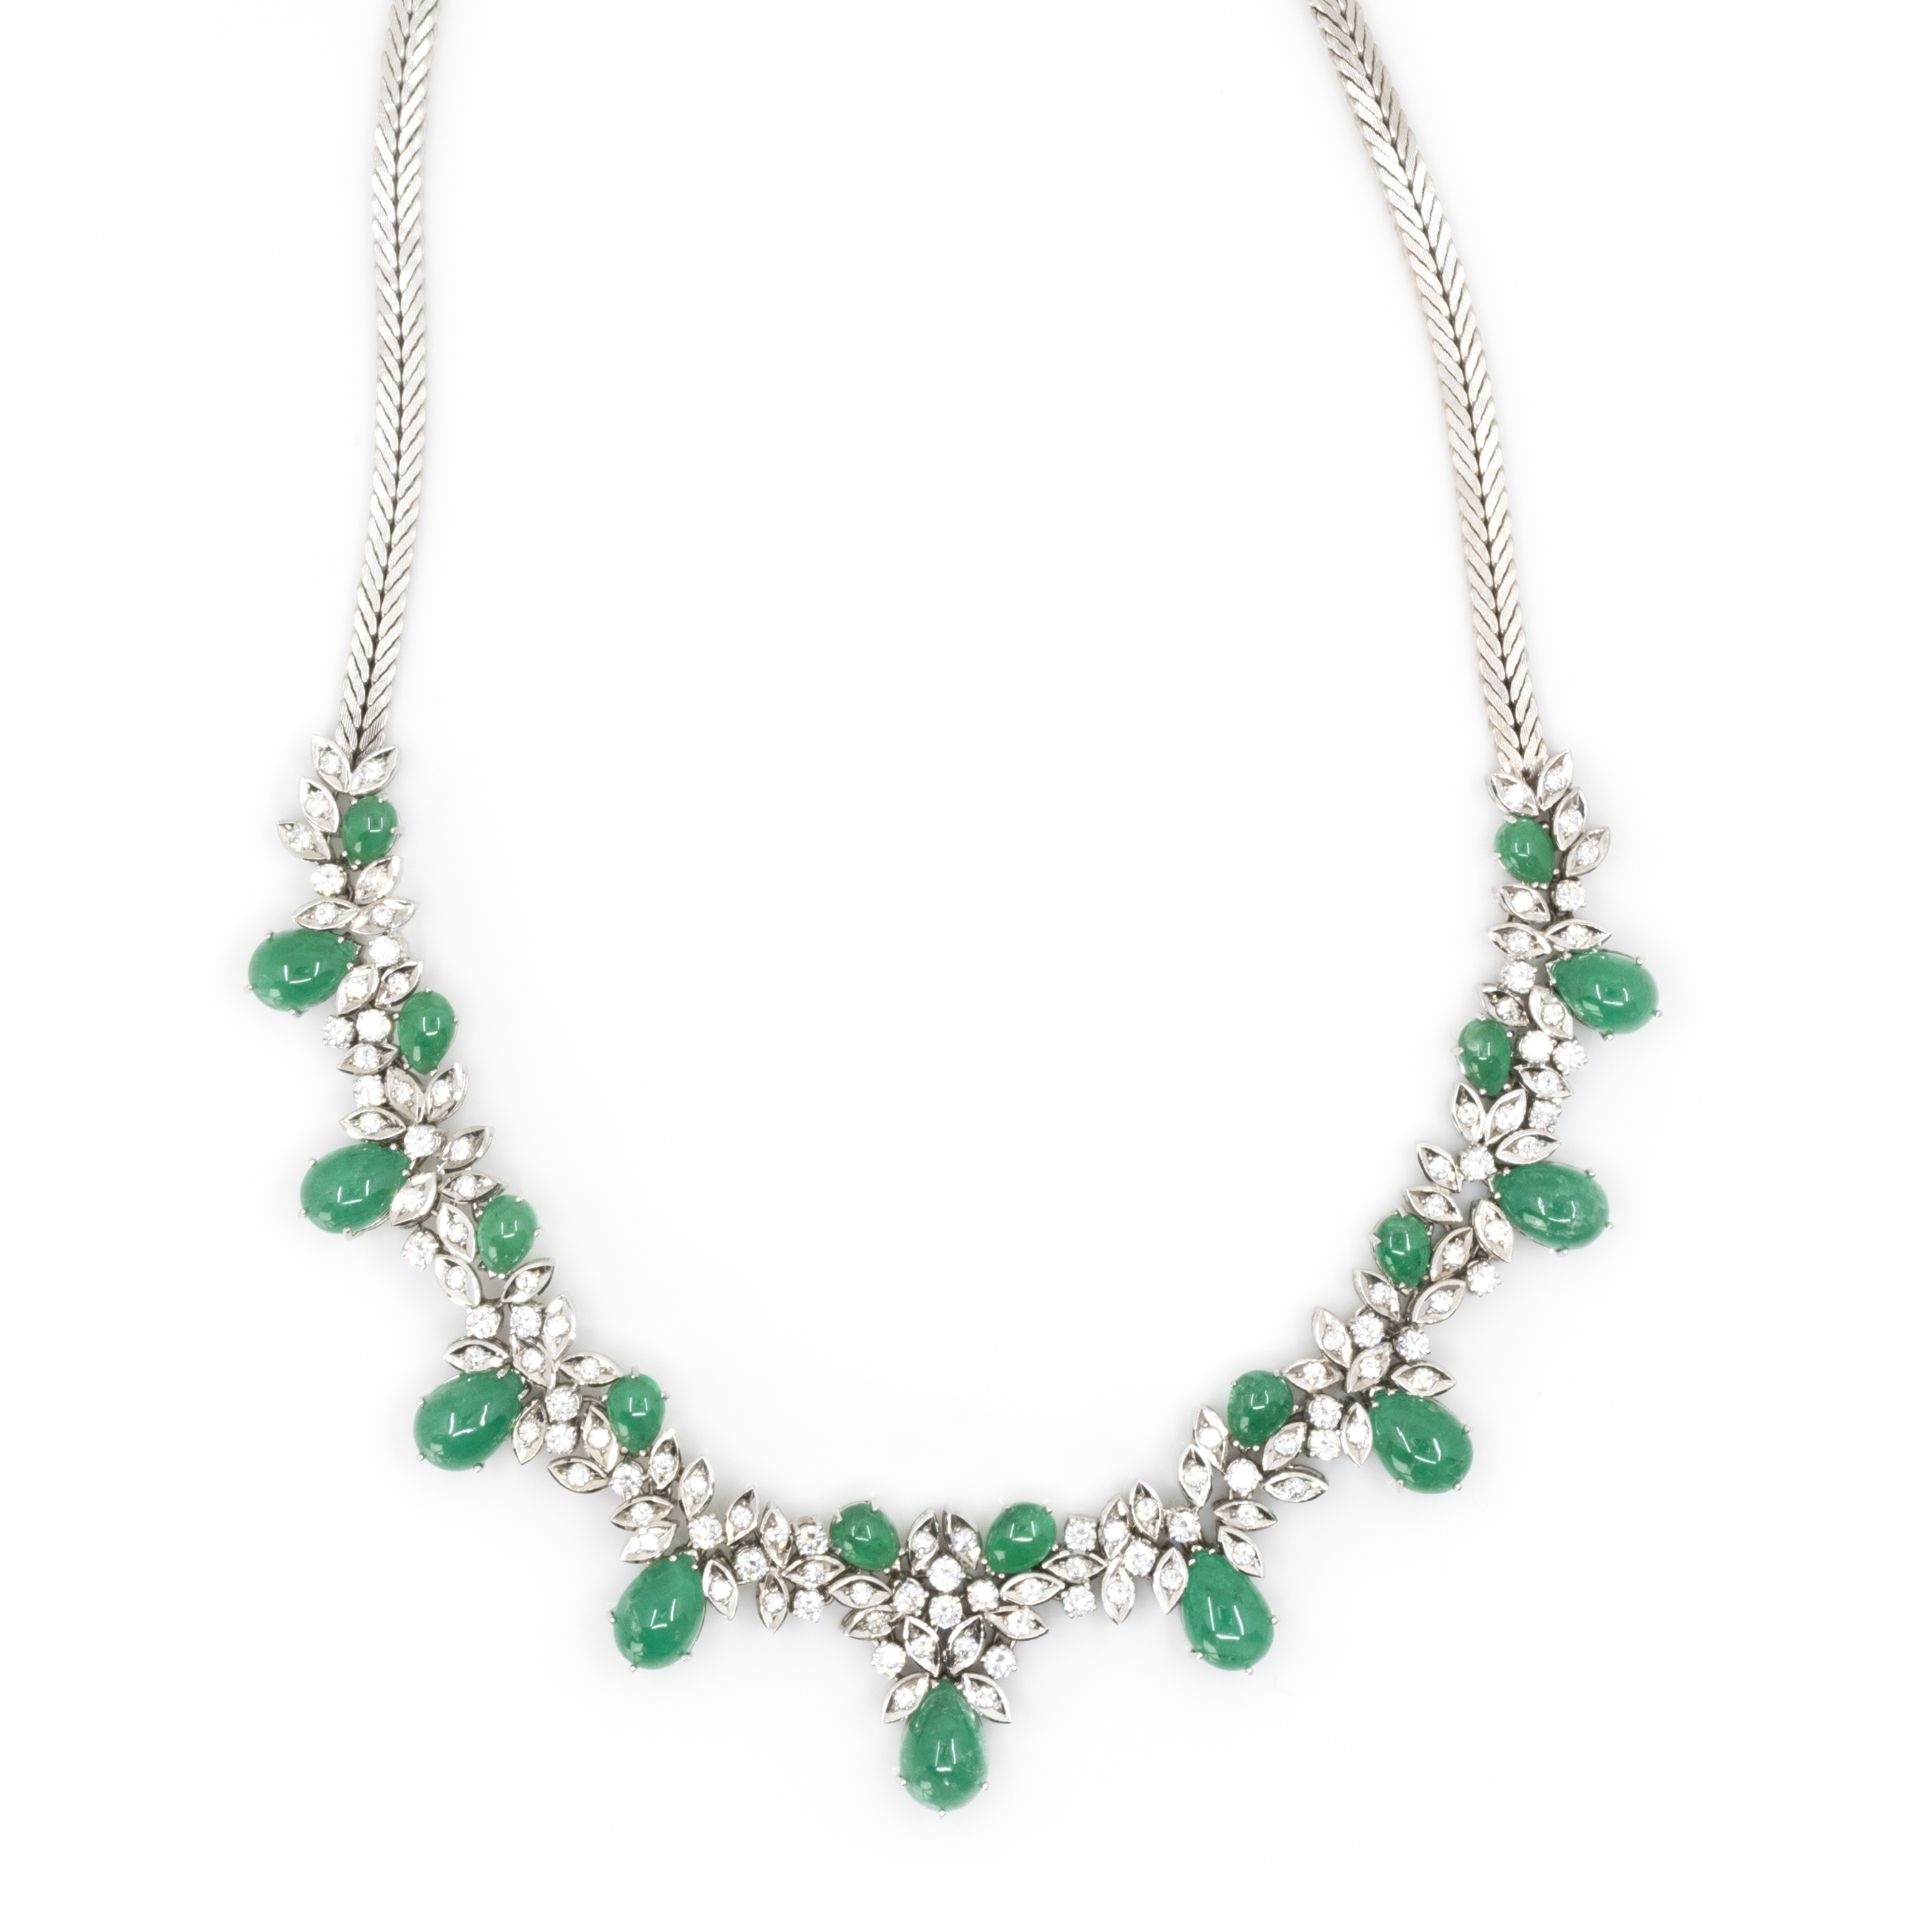 Collier und Armband mit Smaragd-Diamantbesatz - Image 3 of 8